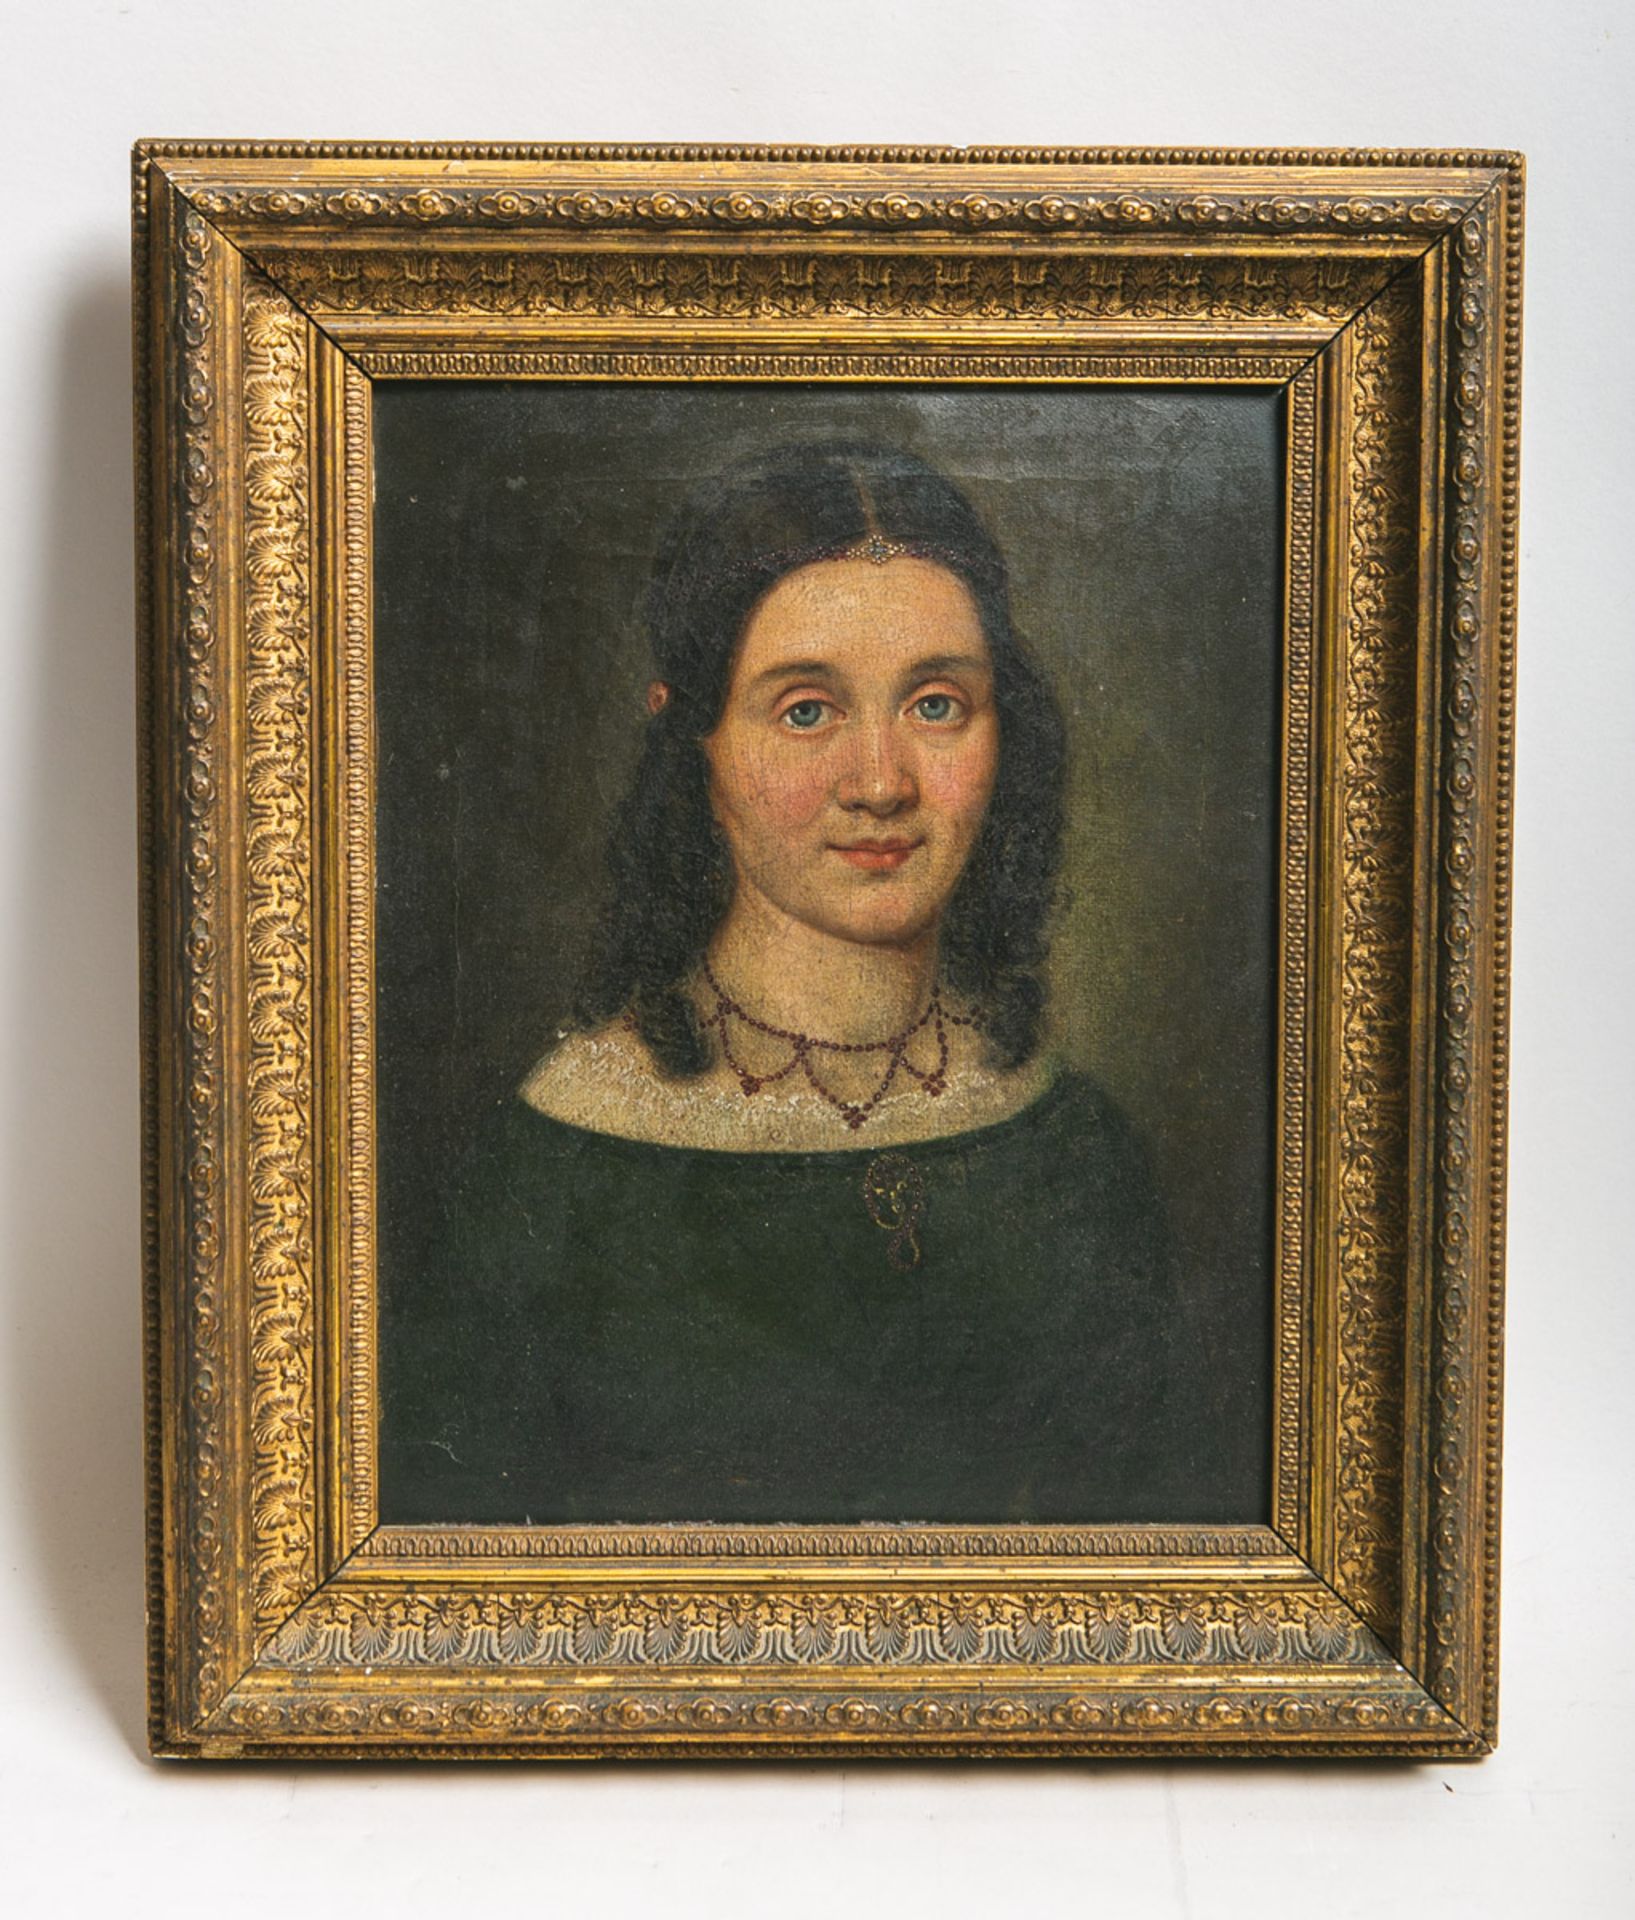 Künstler/in unbekannt (1. H. 19. Jh.), Portrait einer Dame